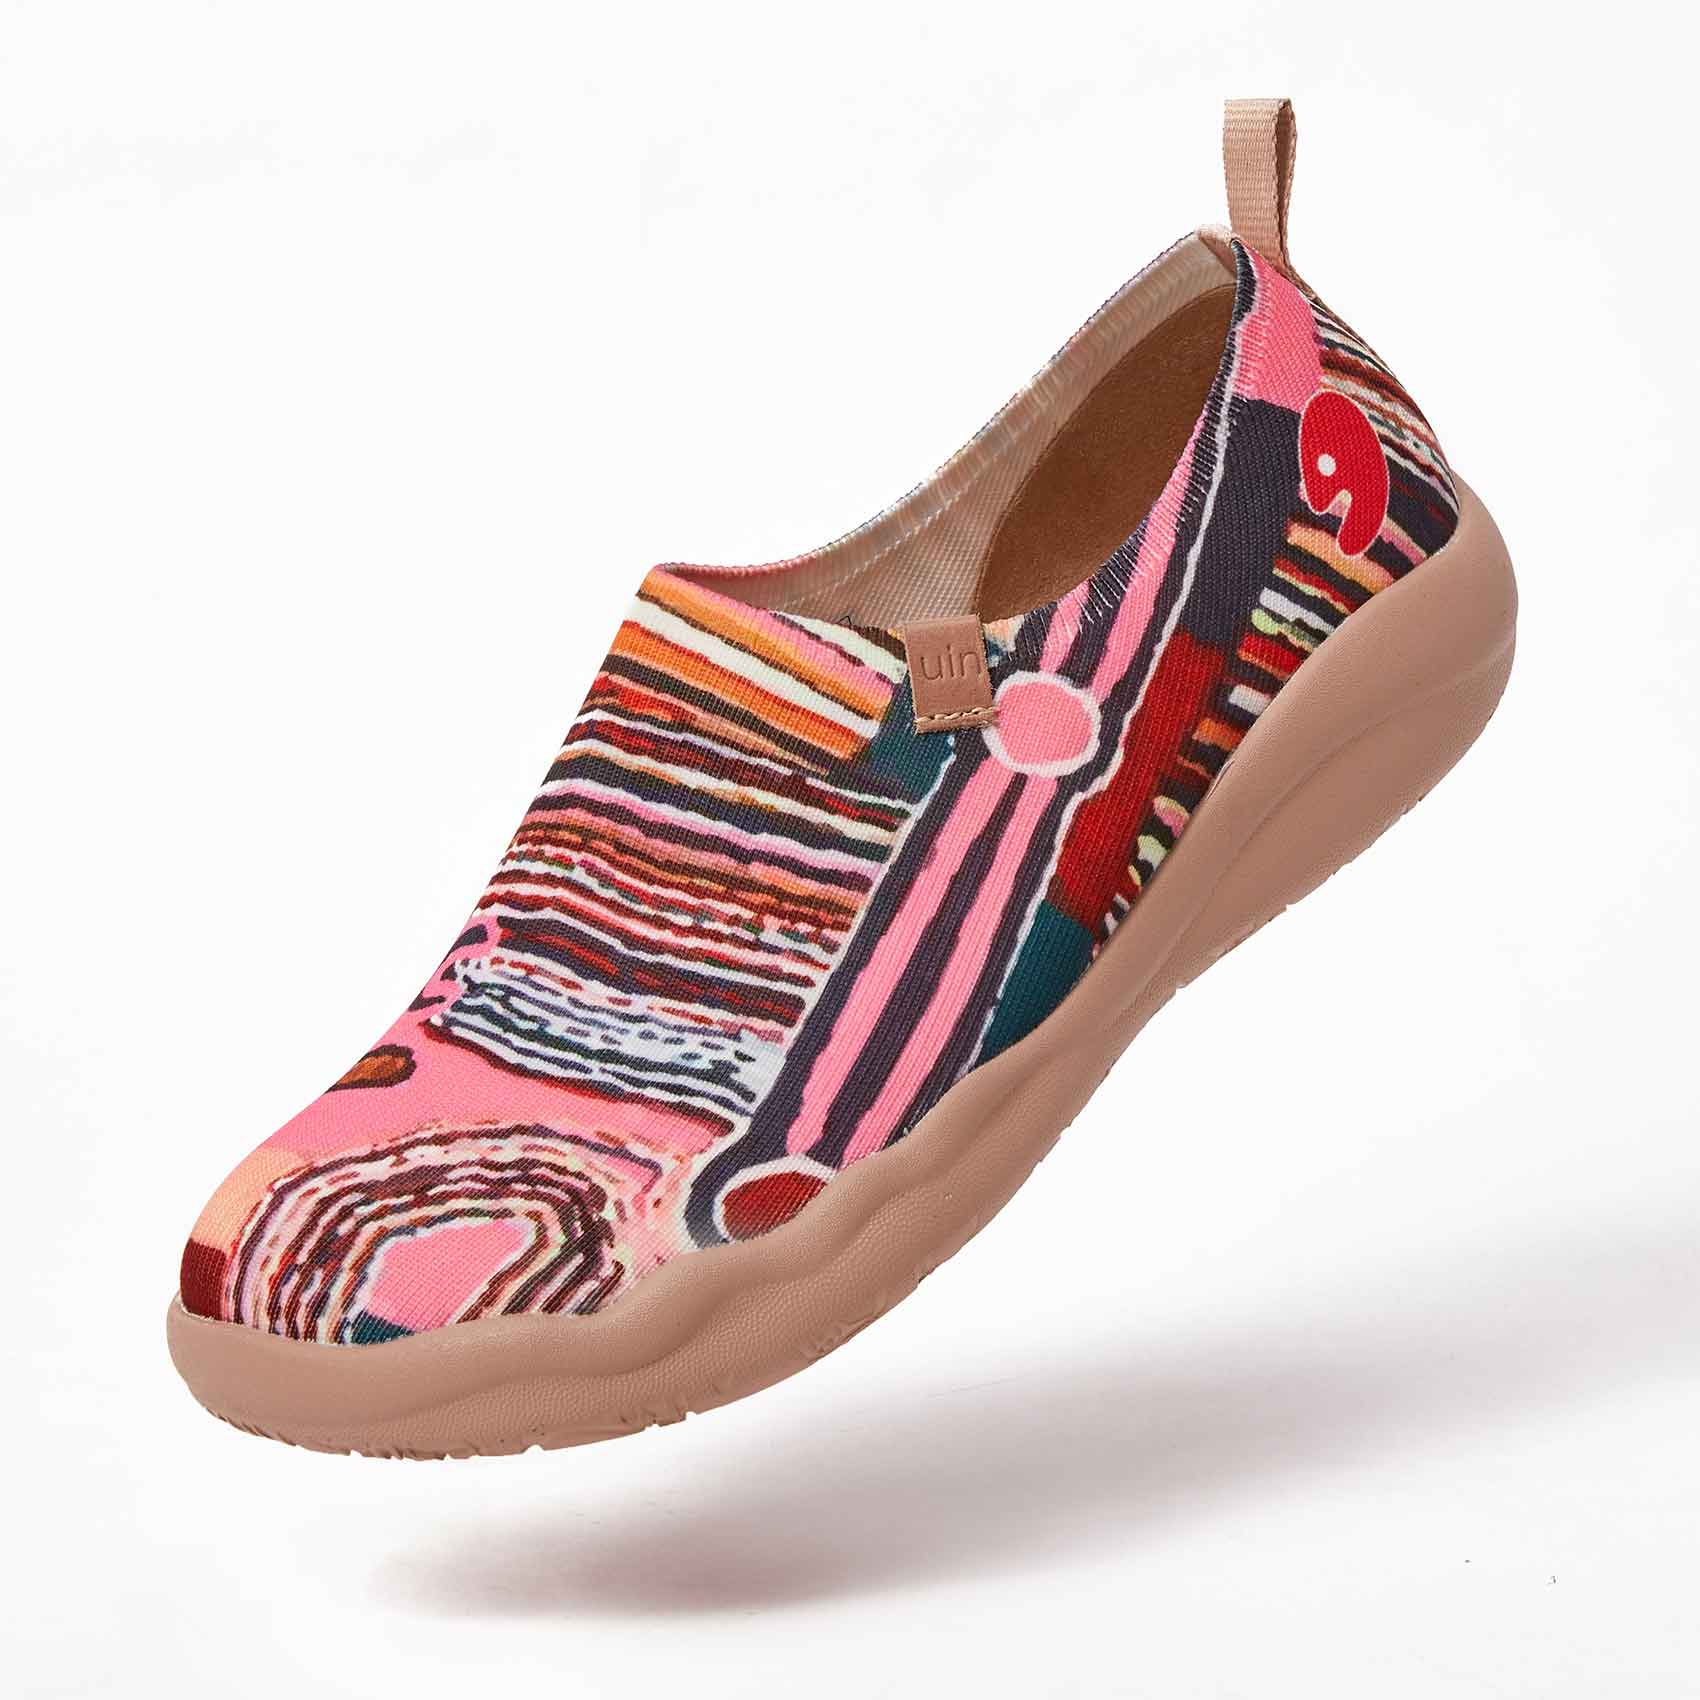 UIN Footwear Women Oceania Canvas loafers